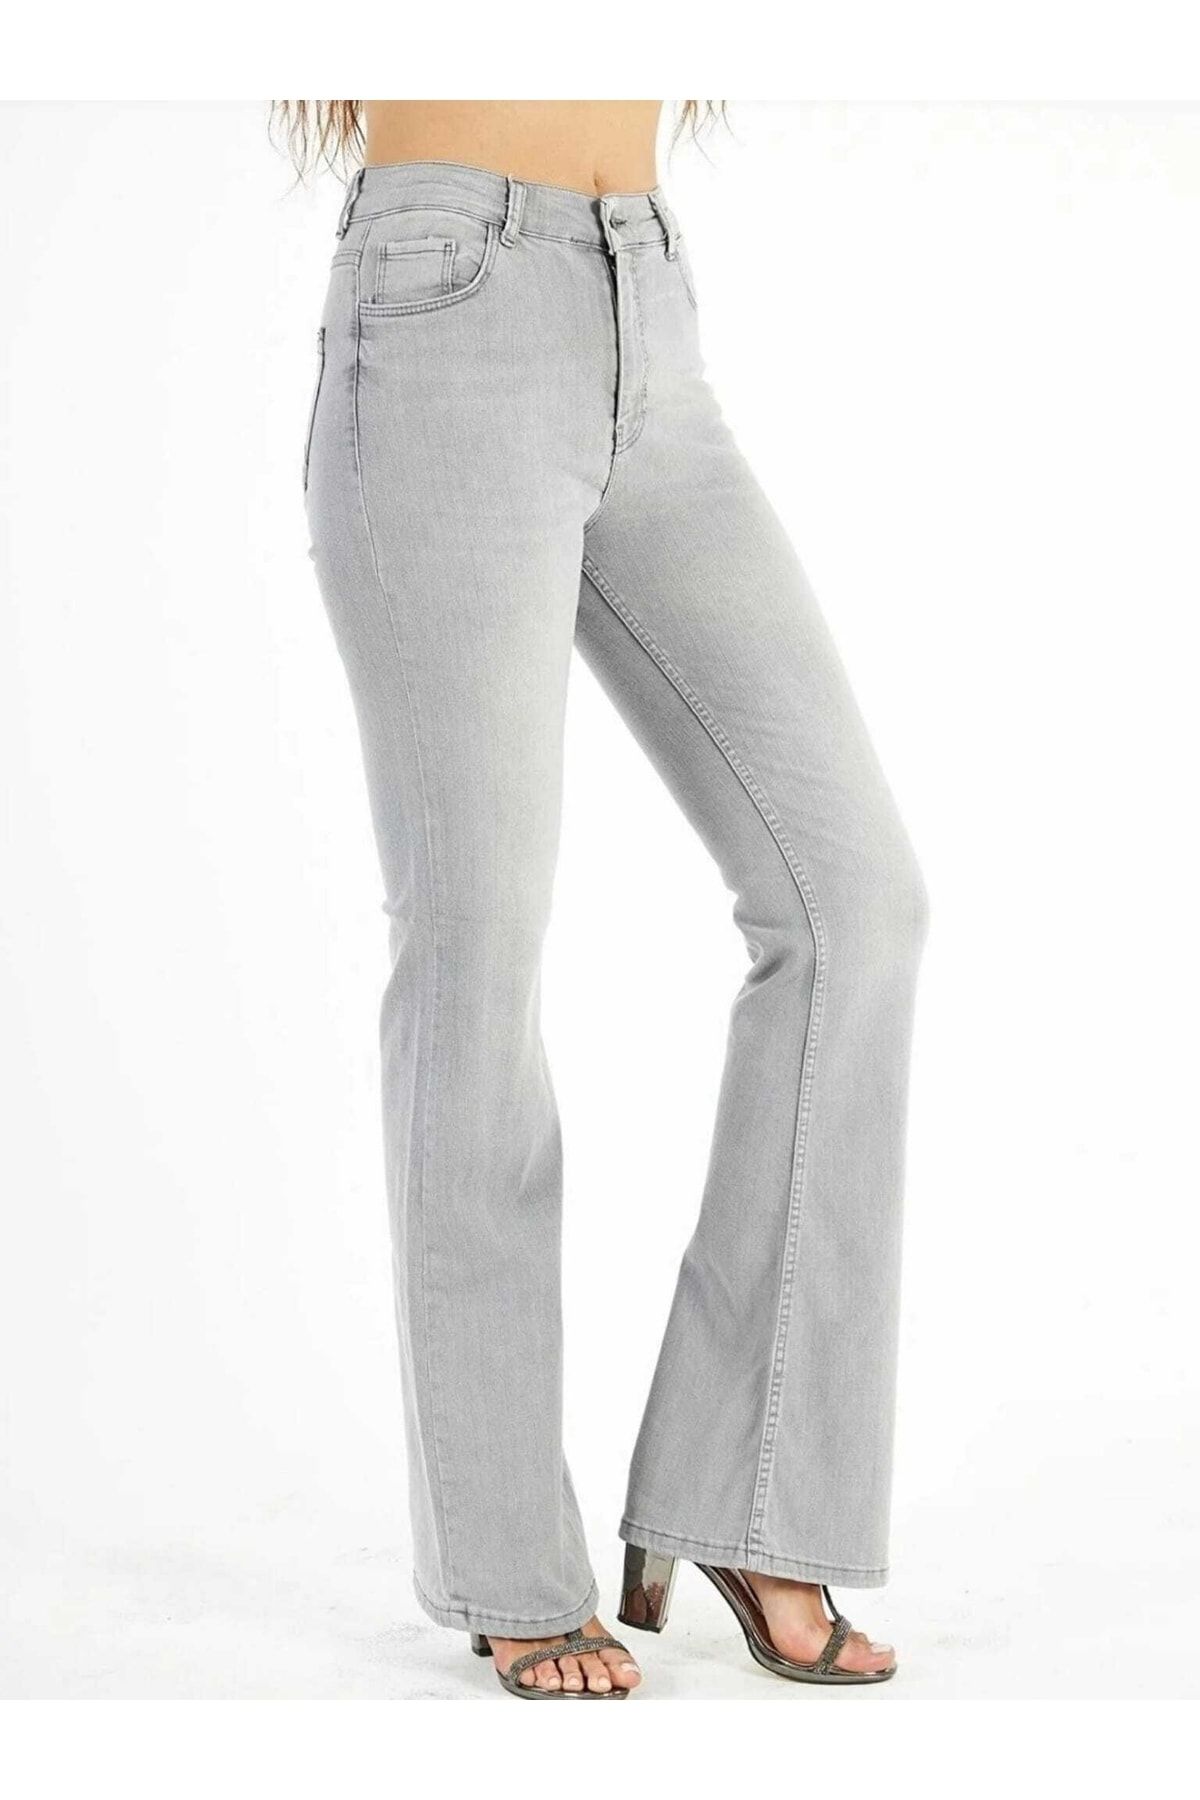 geenz manifacture Light Snow Gray Flare Leg High Waist Power Lycra Jeans -  Trendyol